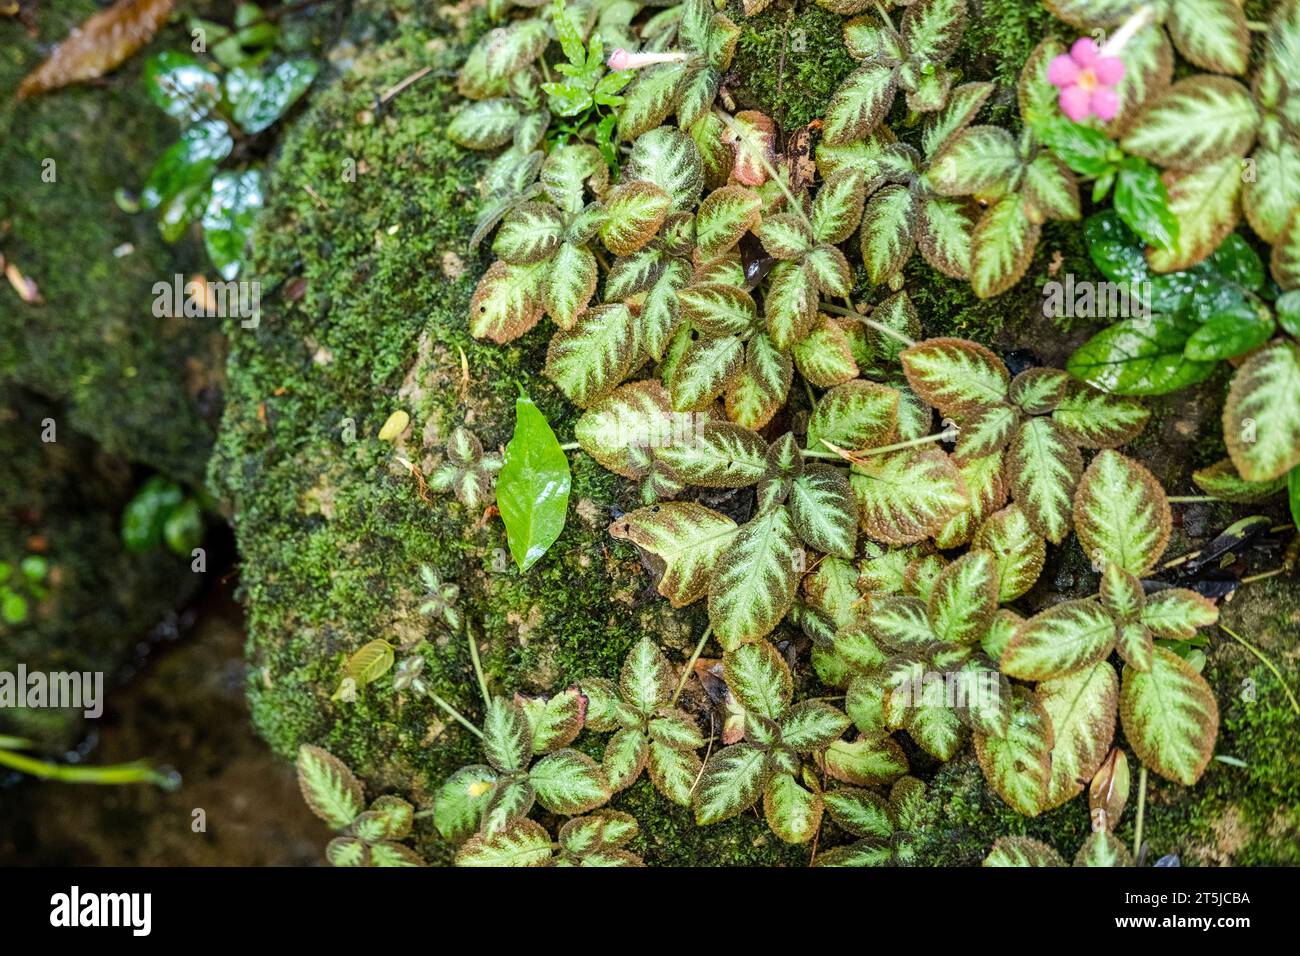 Vert luxuriant mousse de feuillage et fougère dans la garde végétale de renaissance, forêt tropicale. Banque D'Images